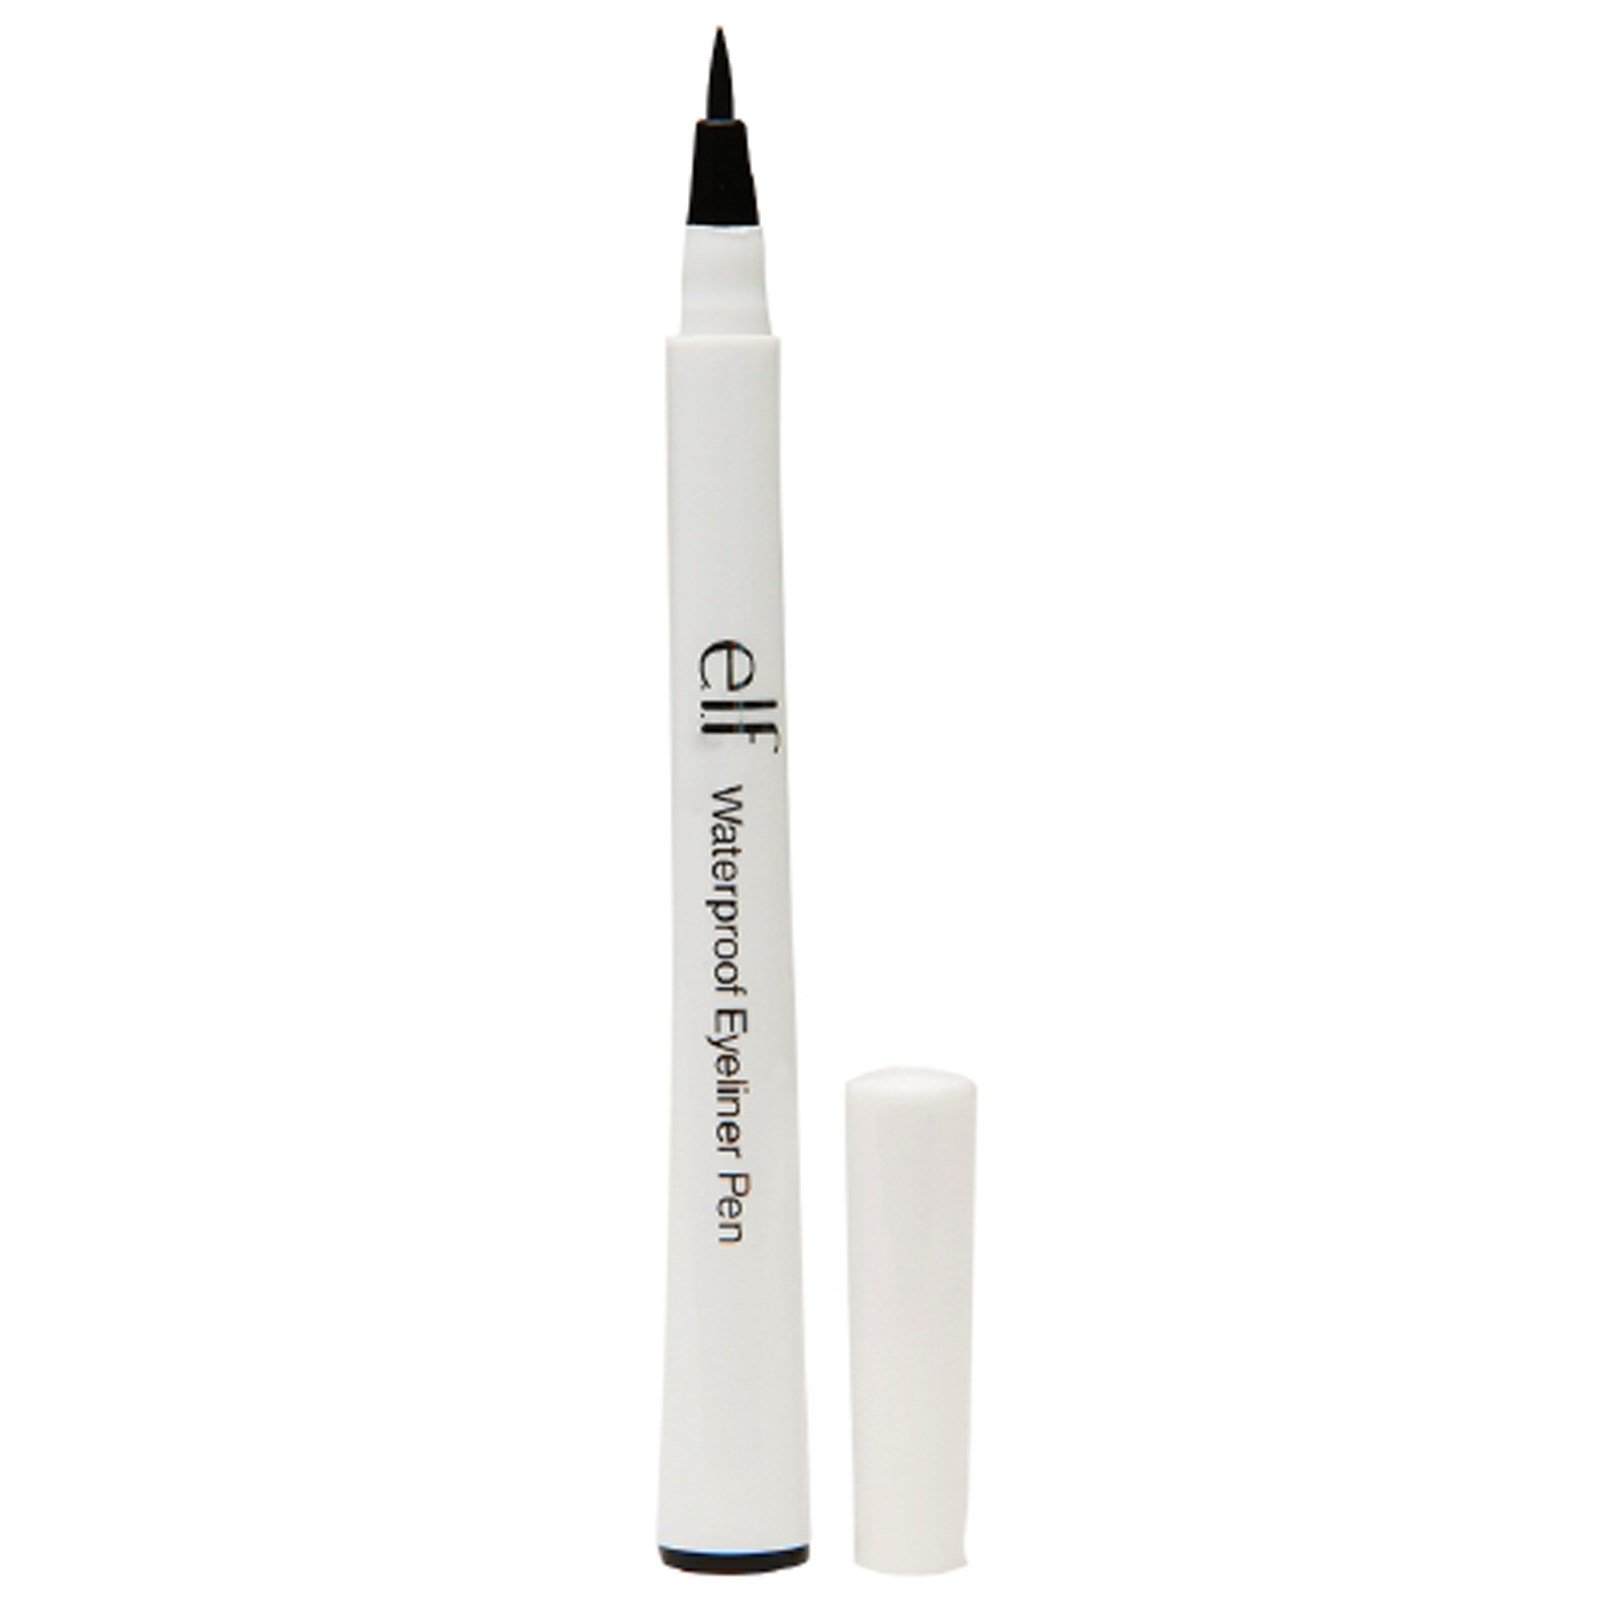 E.L.F., Waterproof Eyeliner Pen, Black, 0.05 oz (1.4 g) - iHerb